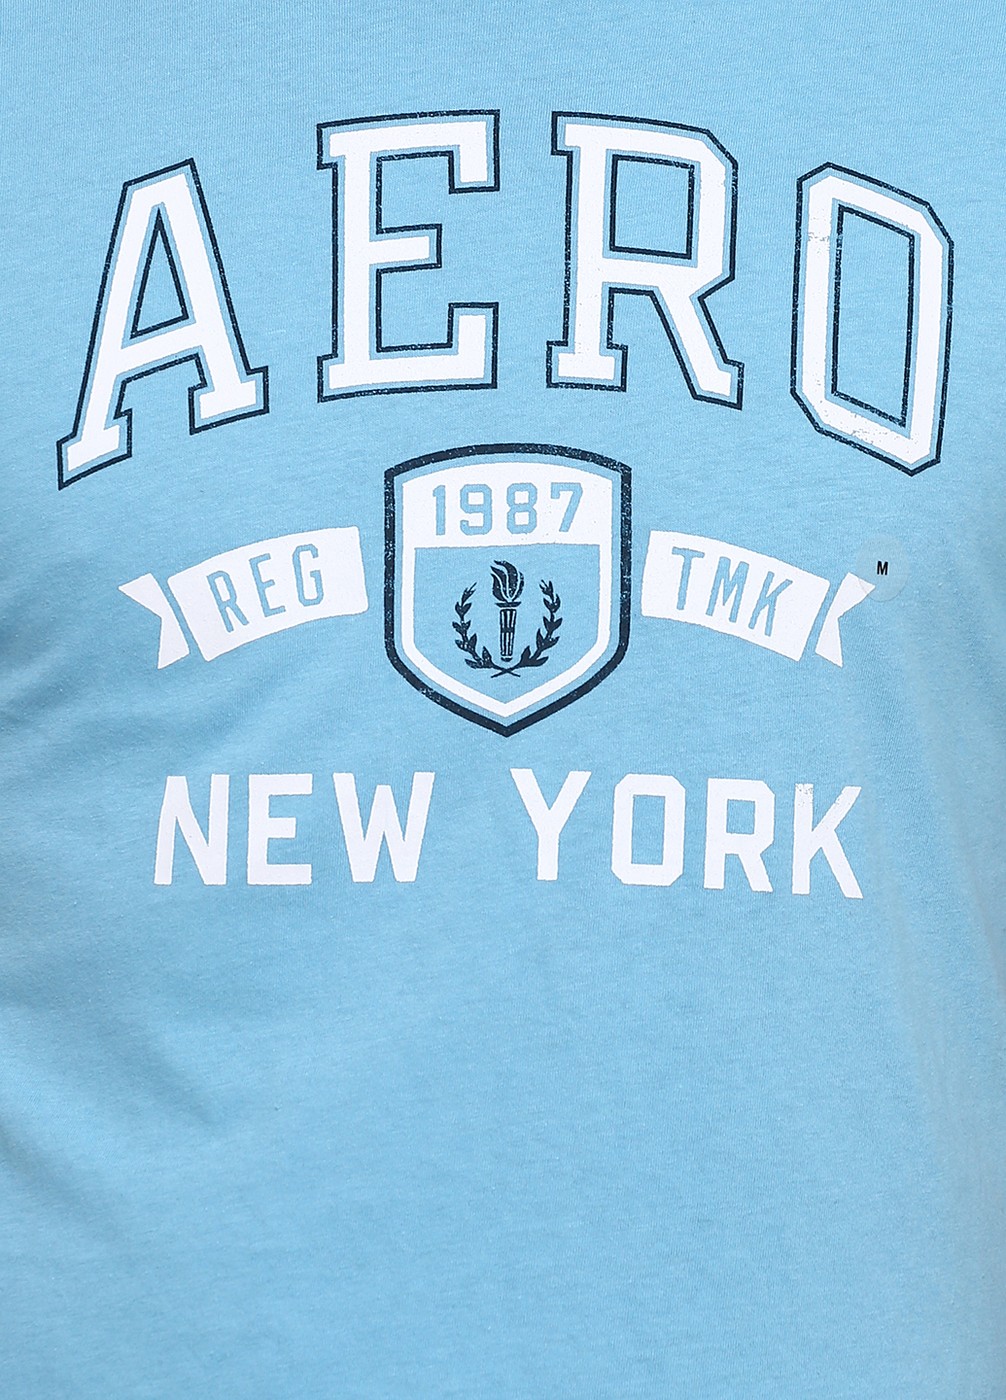 Голубая футболка - мужская футболка Aeropostale, L, L